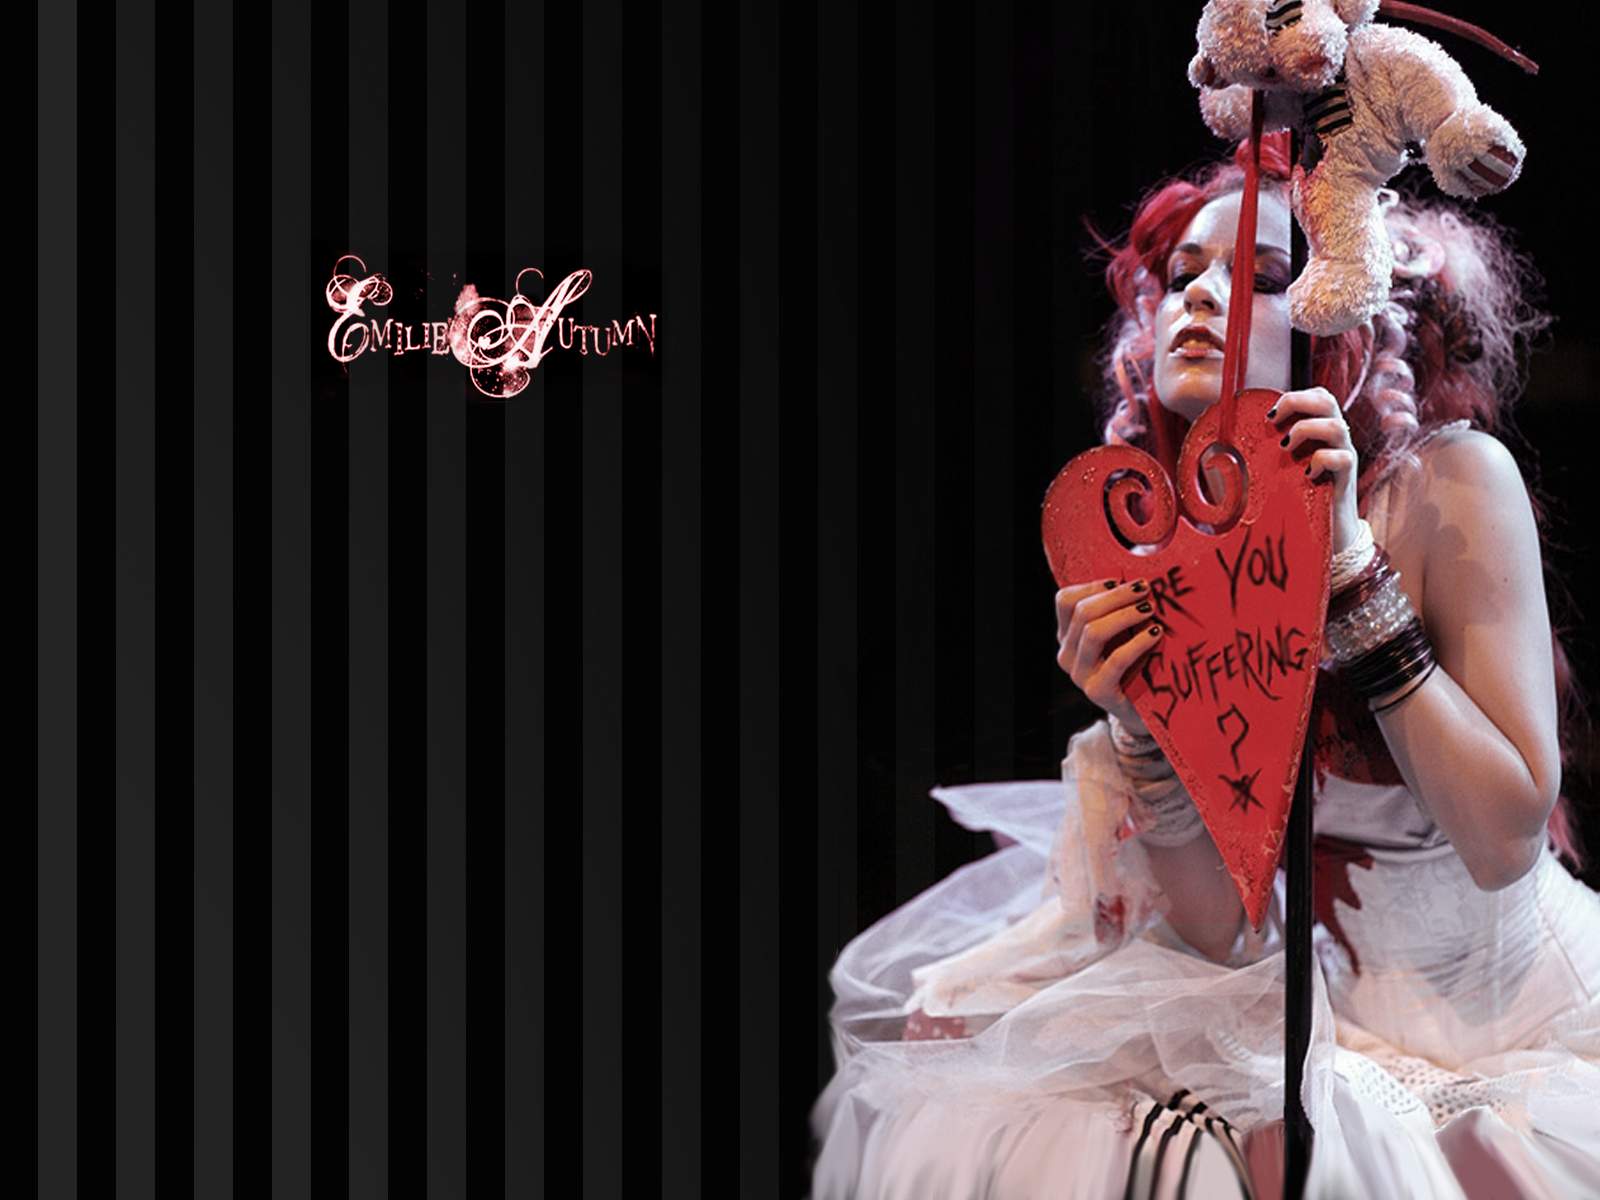 3d обои Emilie Autumn с сердечком (are you suffering)  игрушки # 41588